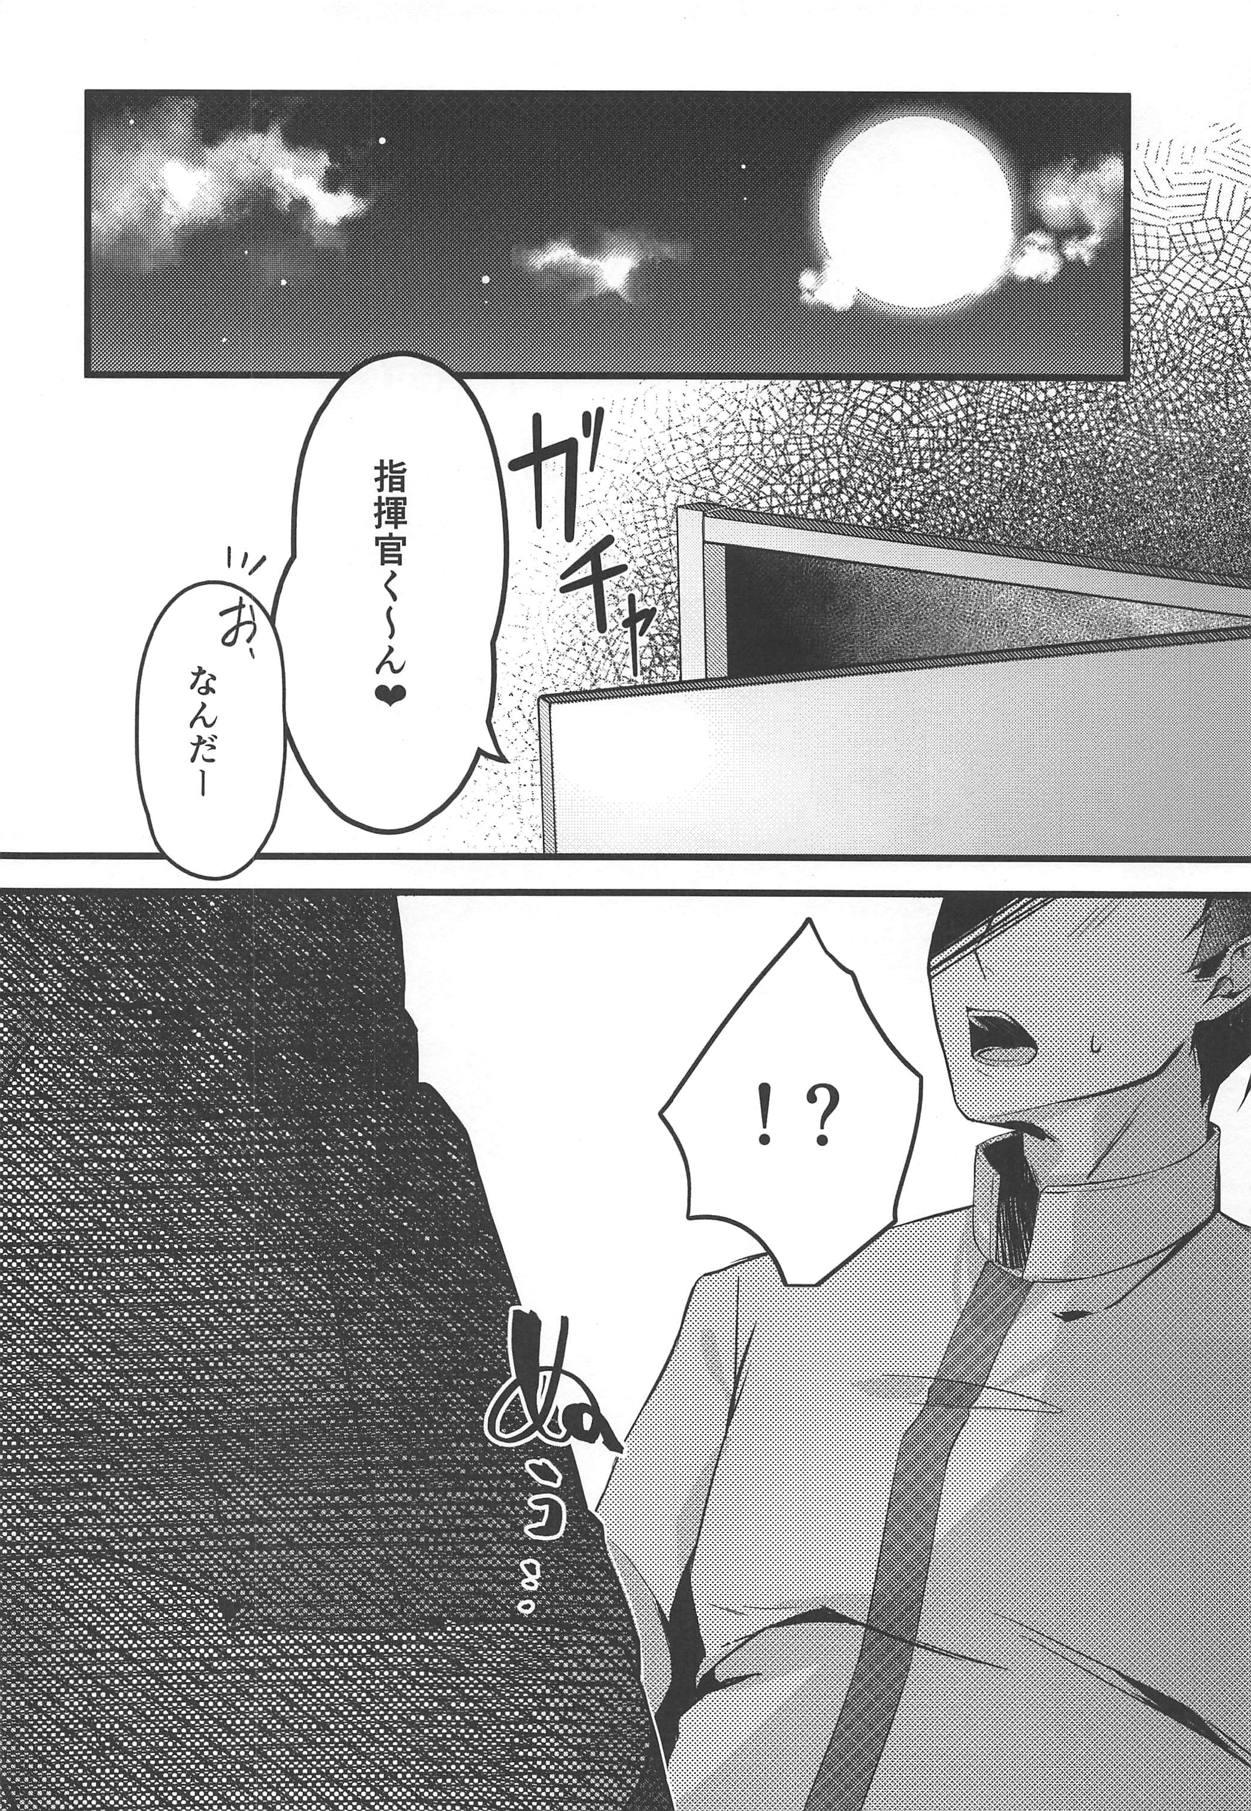 Farting Watashi no Fuku ja Dame desu ka? - Azur lane Spycam - Page 3